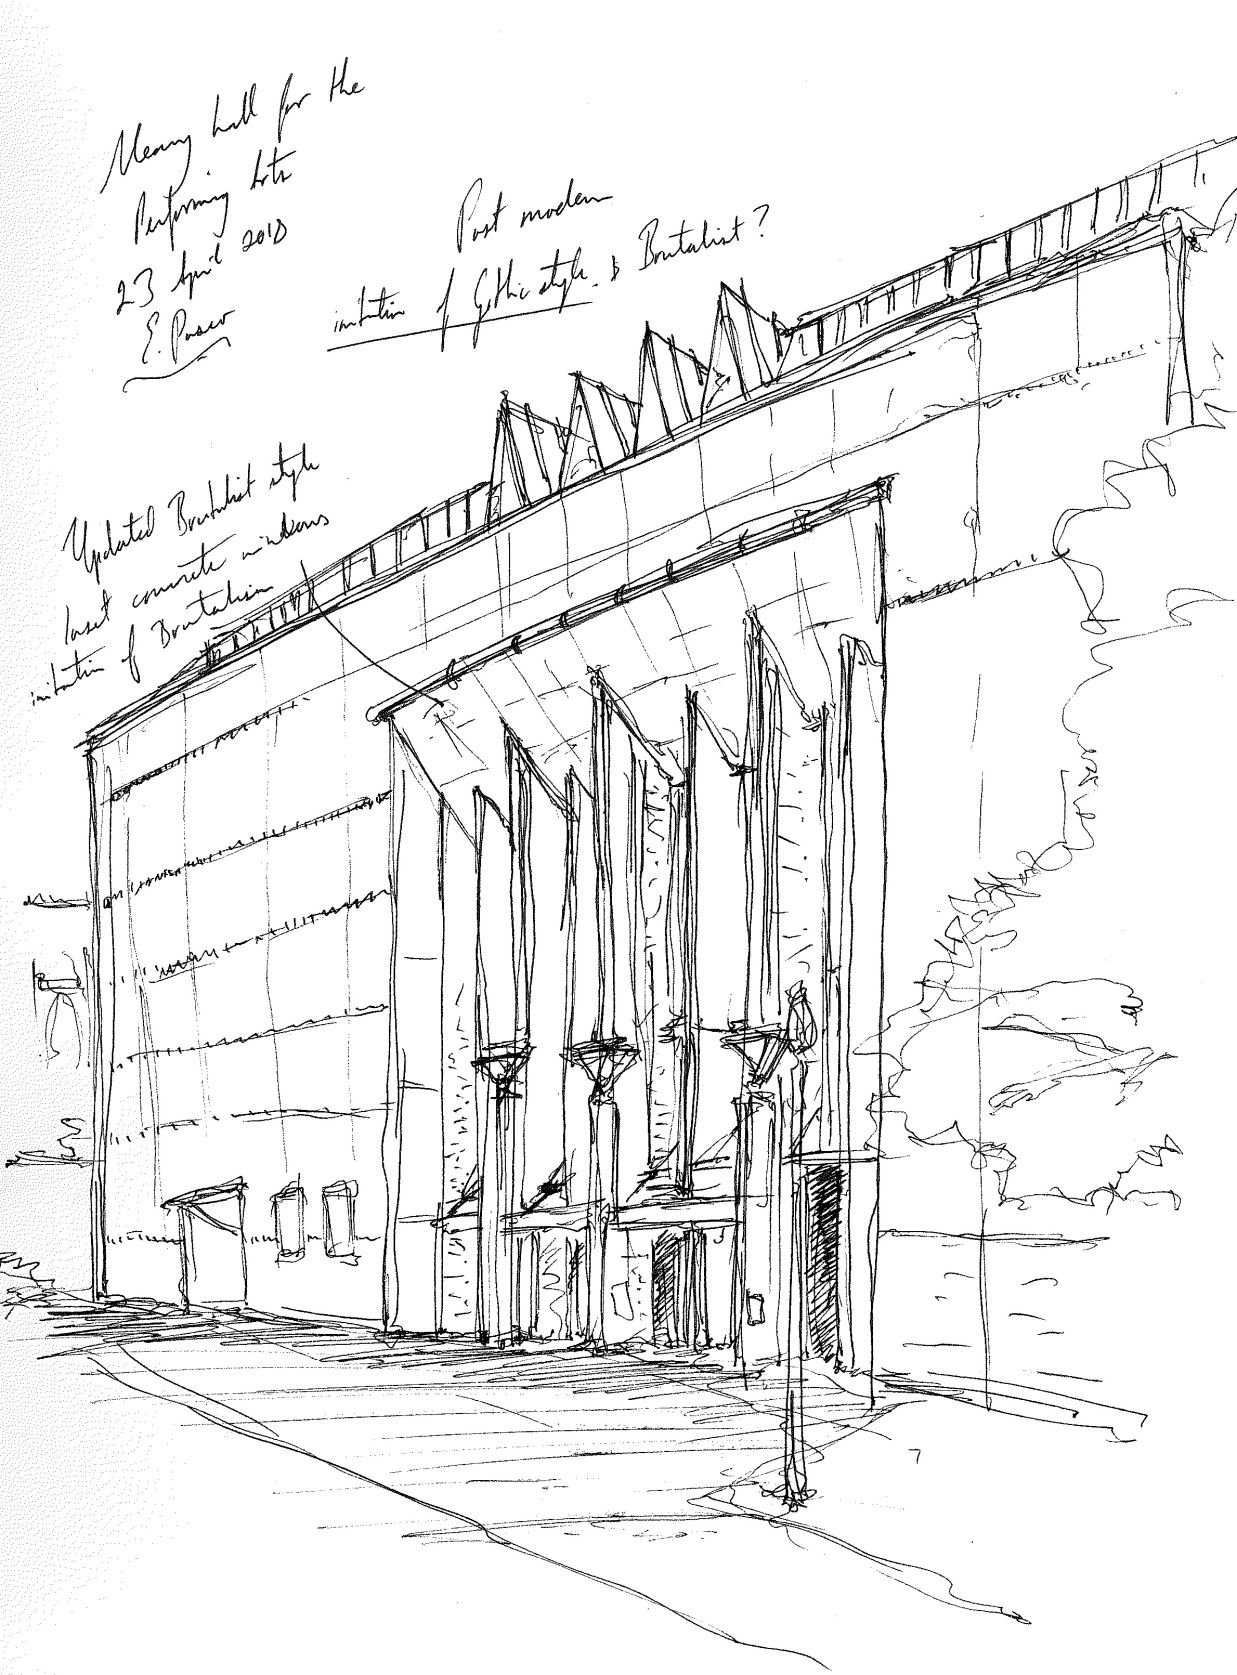 postmodern architecture sketch